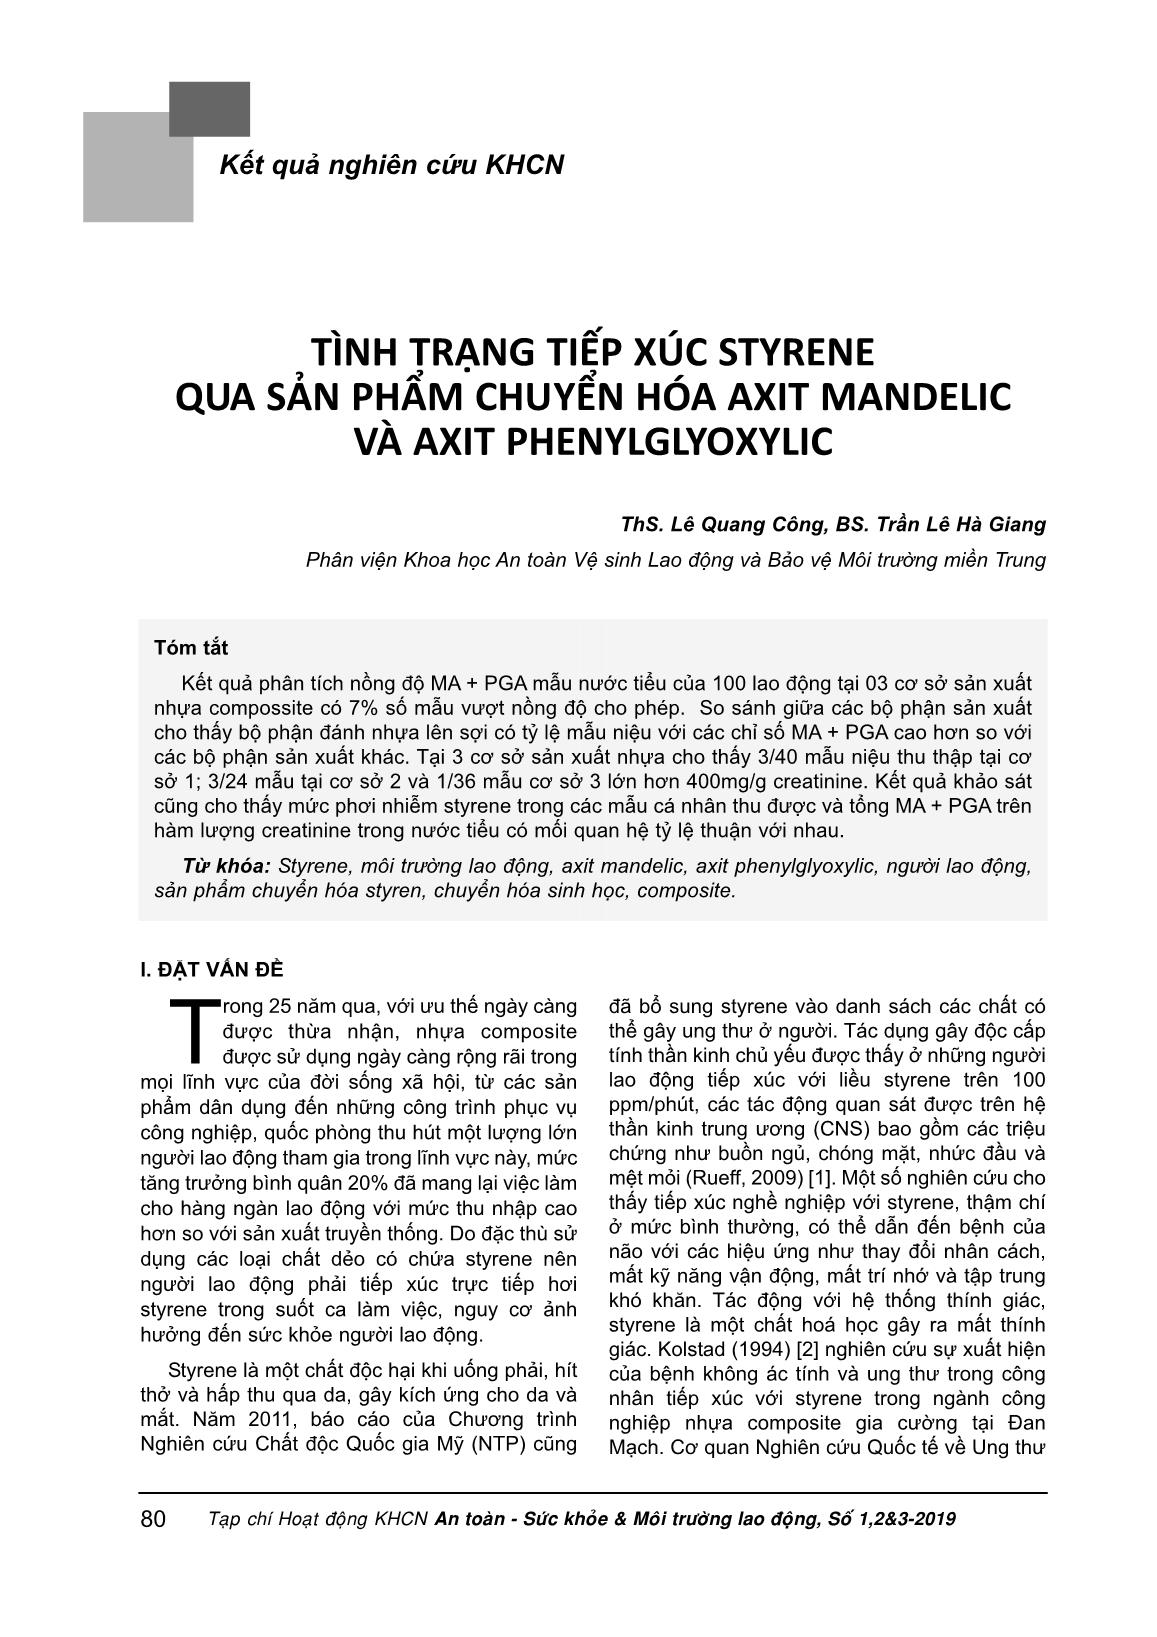 Tình trạng tiếp xúc Styrene qua sản phẩm chuyển hóa Axit Mandelic và Axit Phenylglyoxylic trang 1